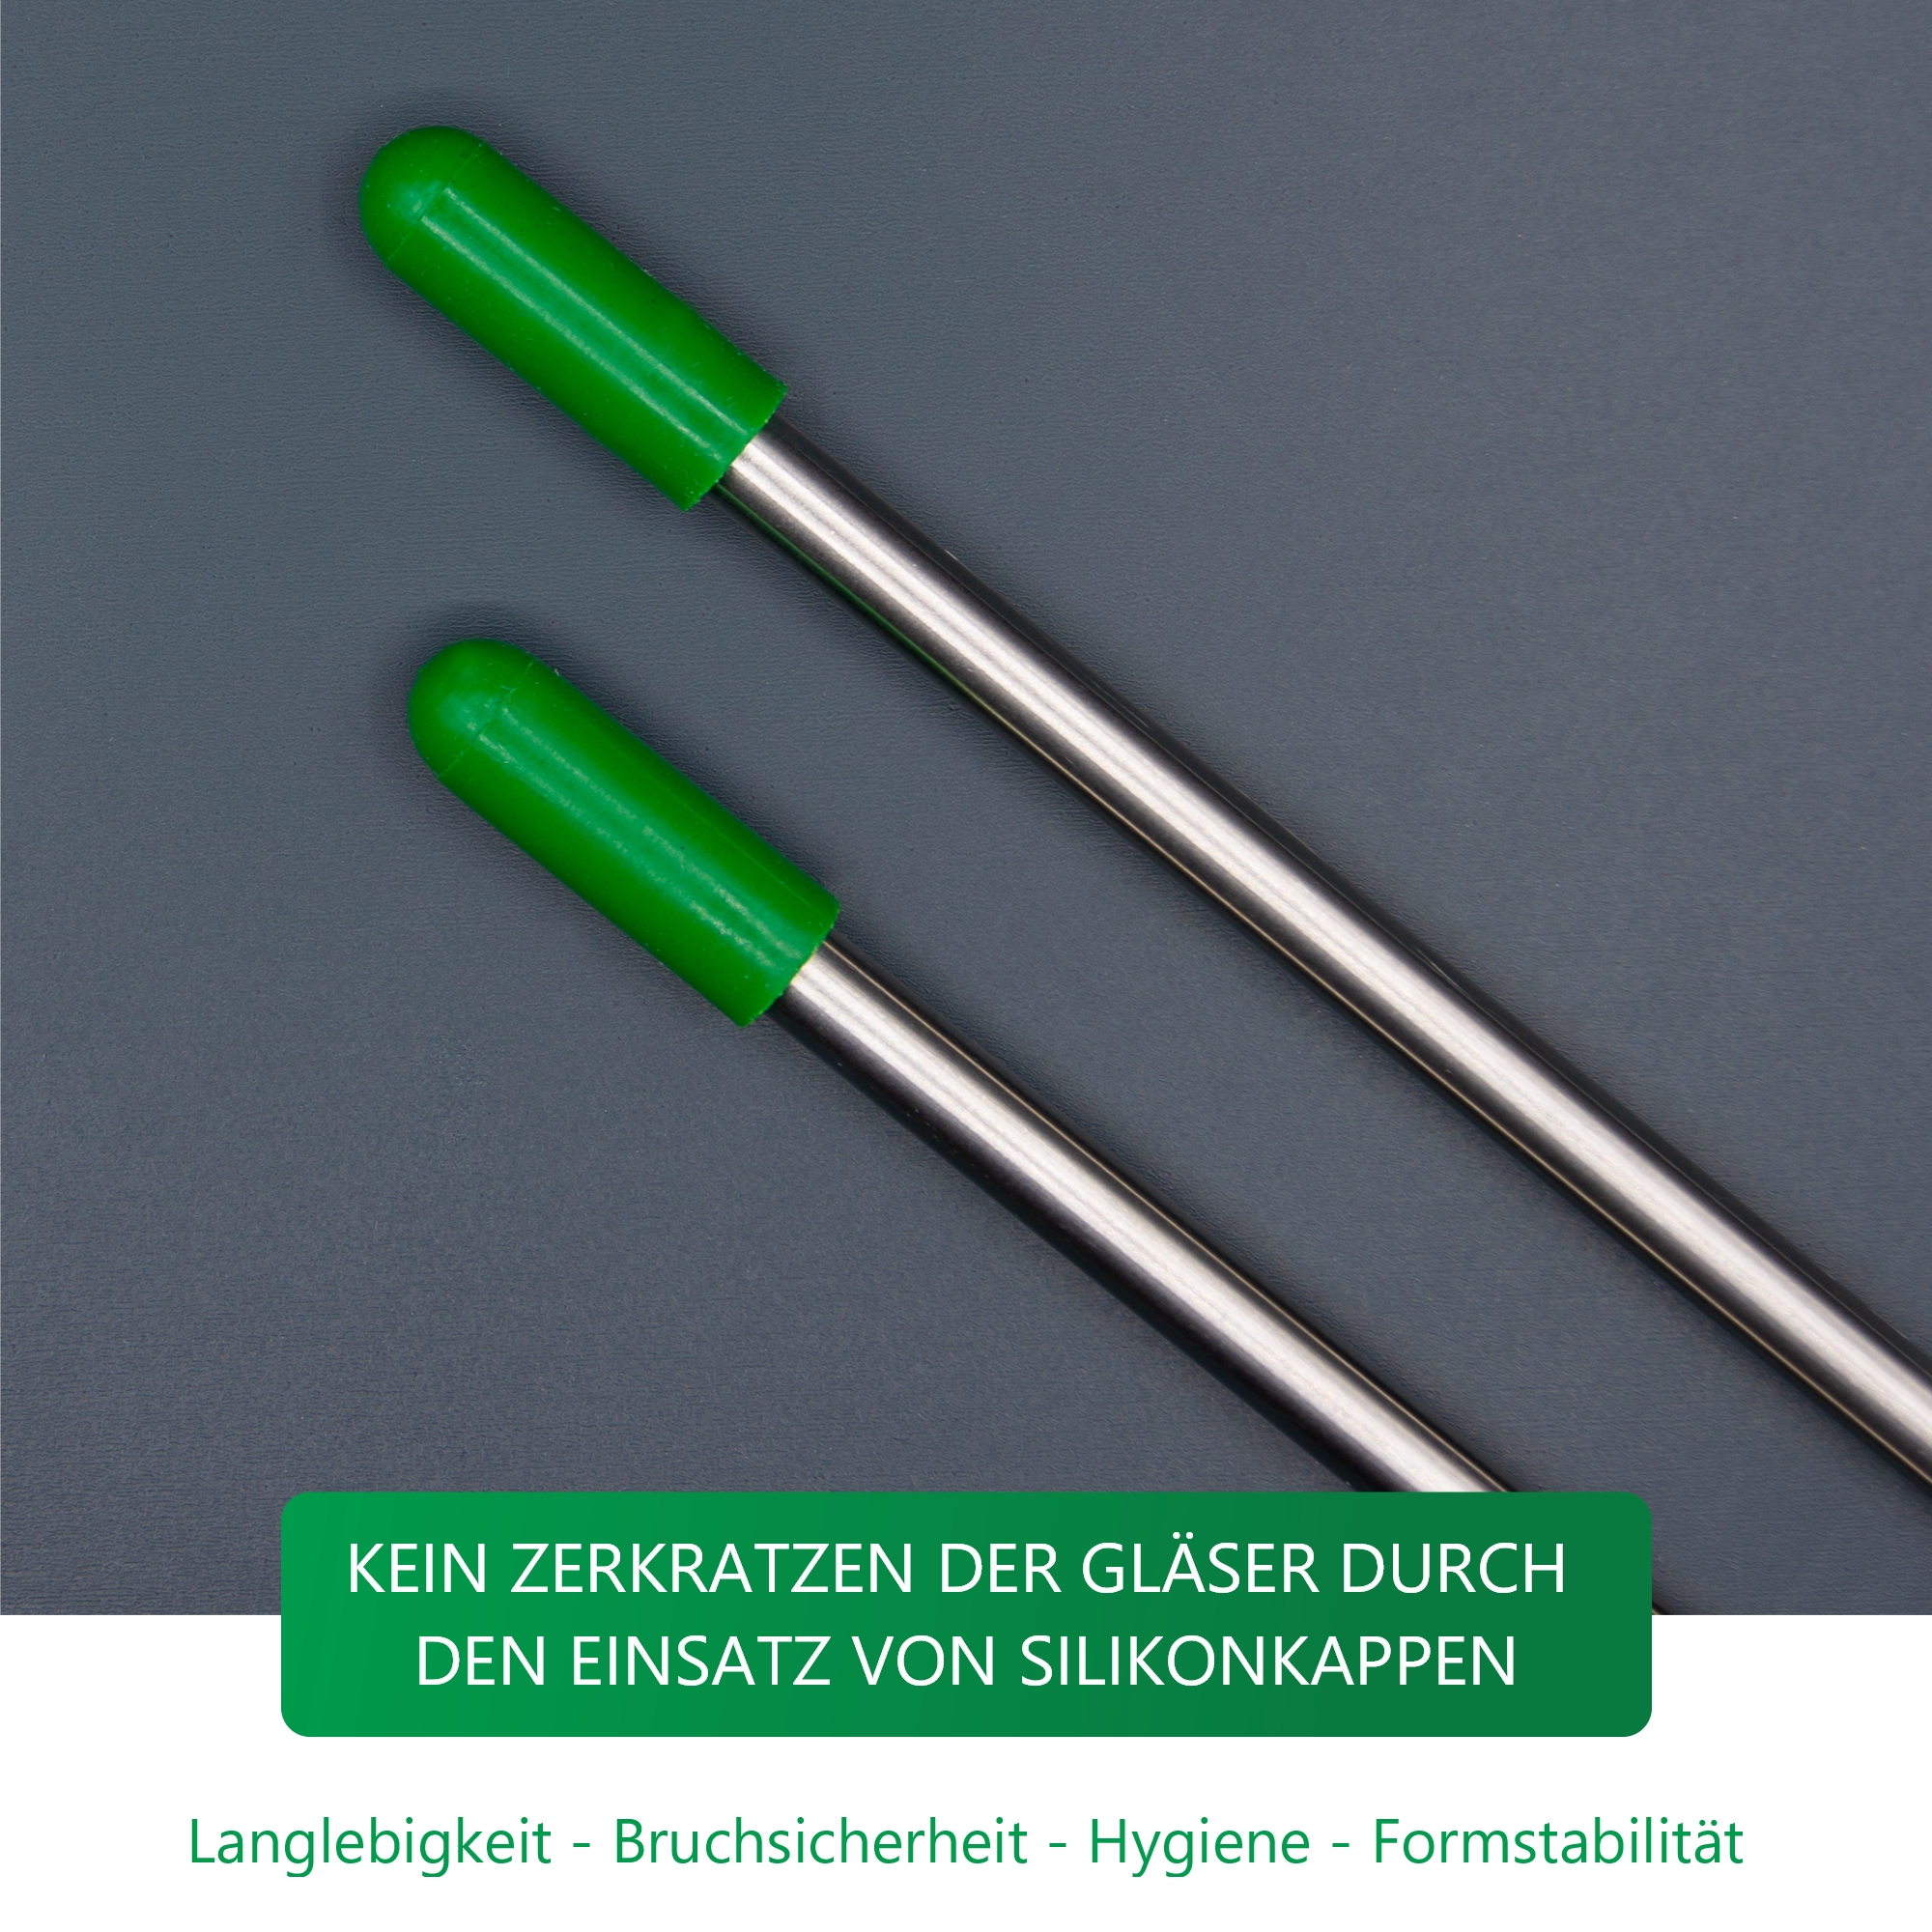 Edelstahl Glashalter für Geschirrspüler mit grünen Kappen - Set Sektfreunde